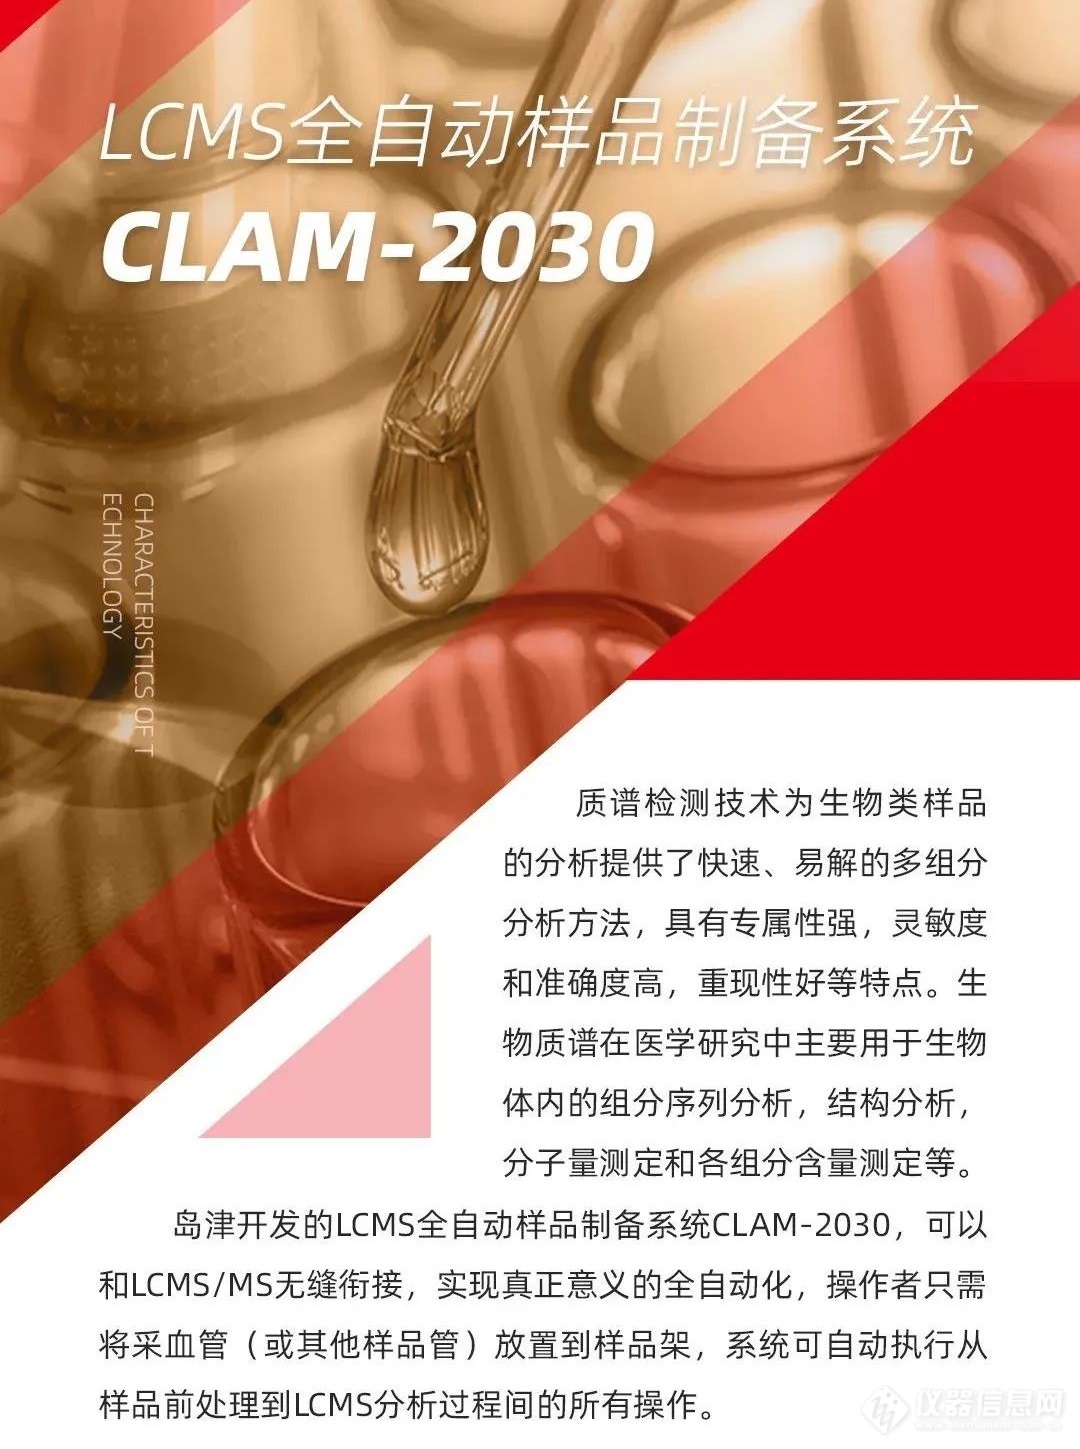 教育部【设备更新】岛津特色技术之【医学篇一】LCMS全自动样品制备系统CLAM-2030